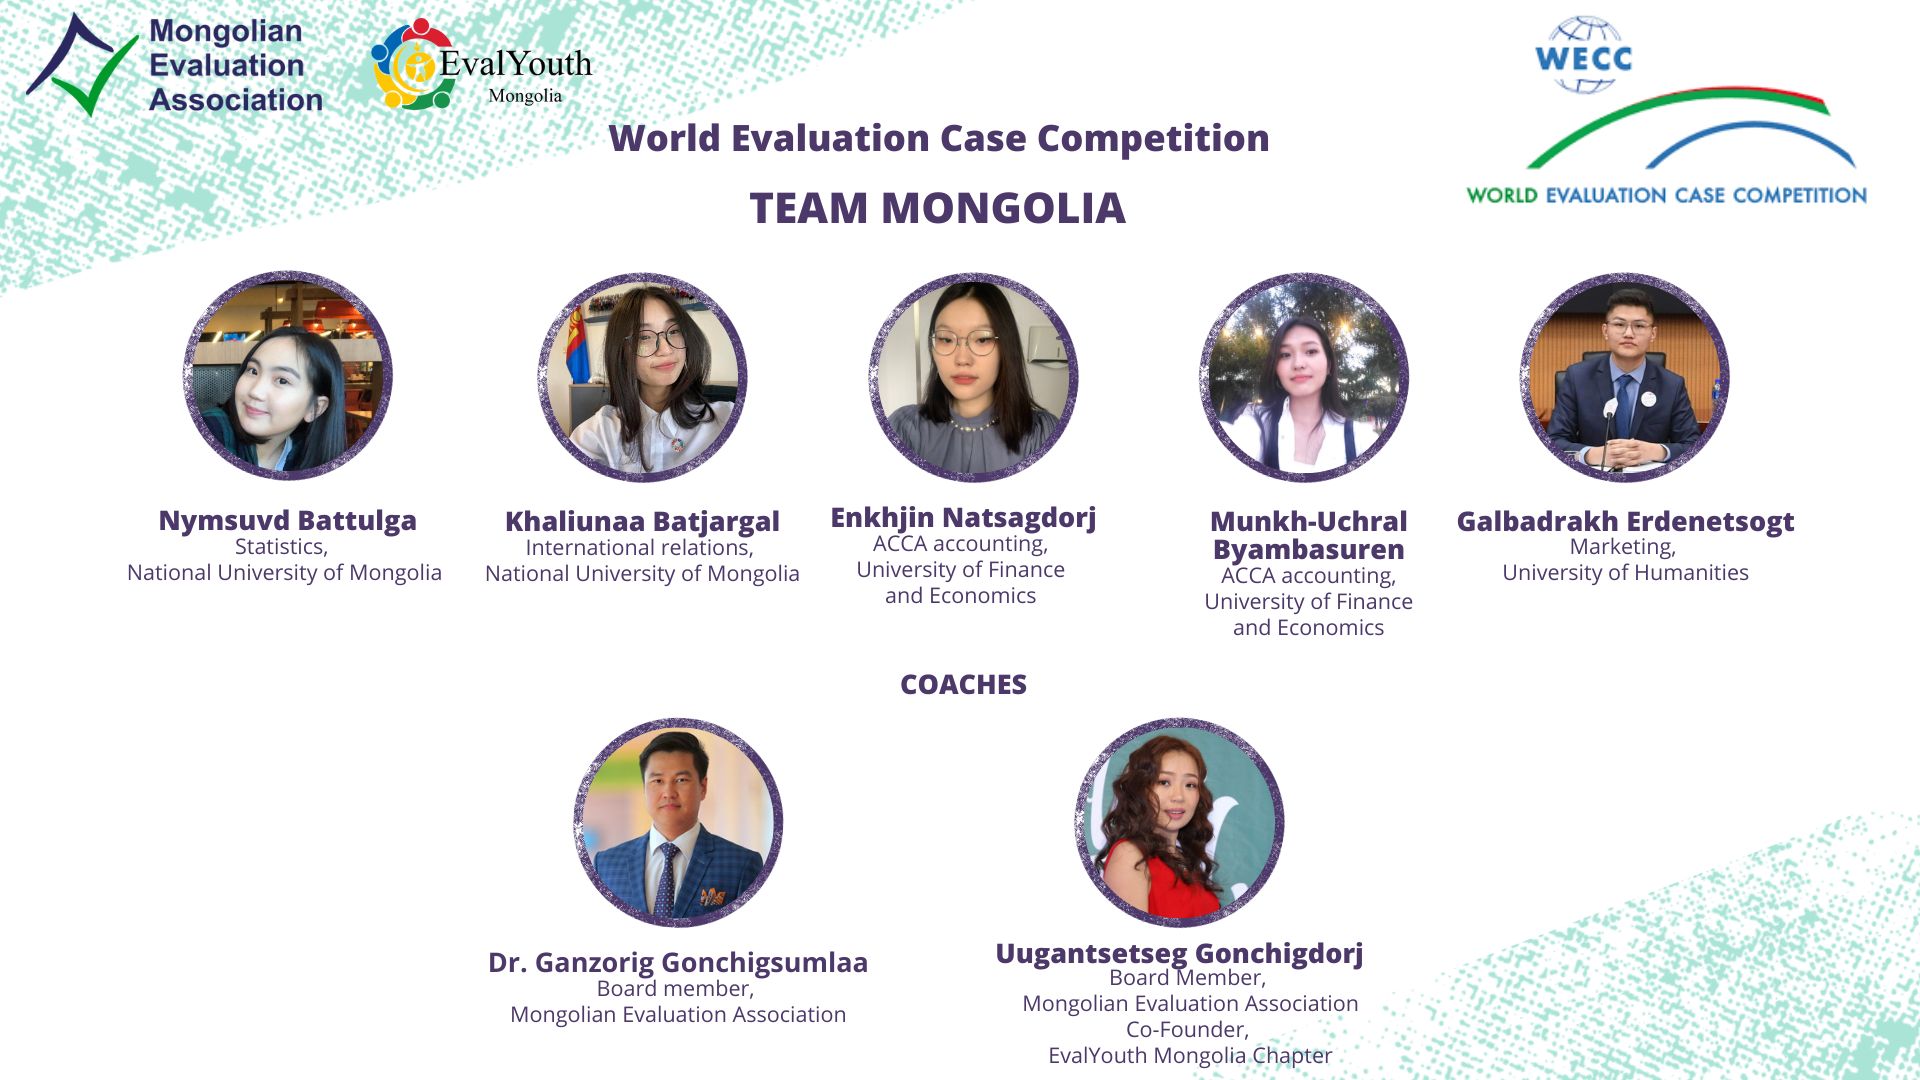 Mongolianevaluation